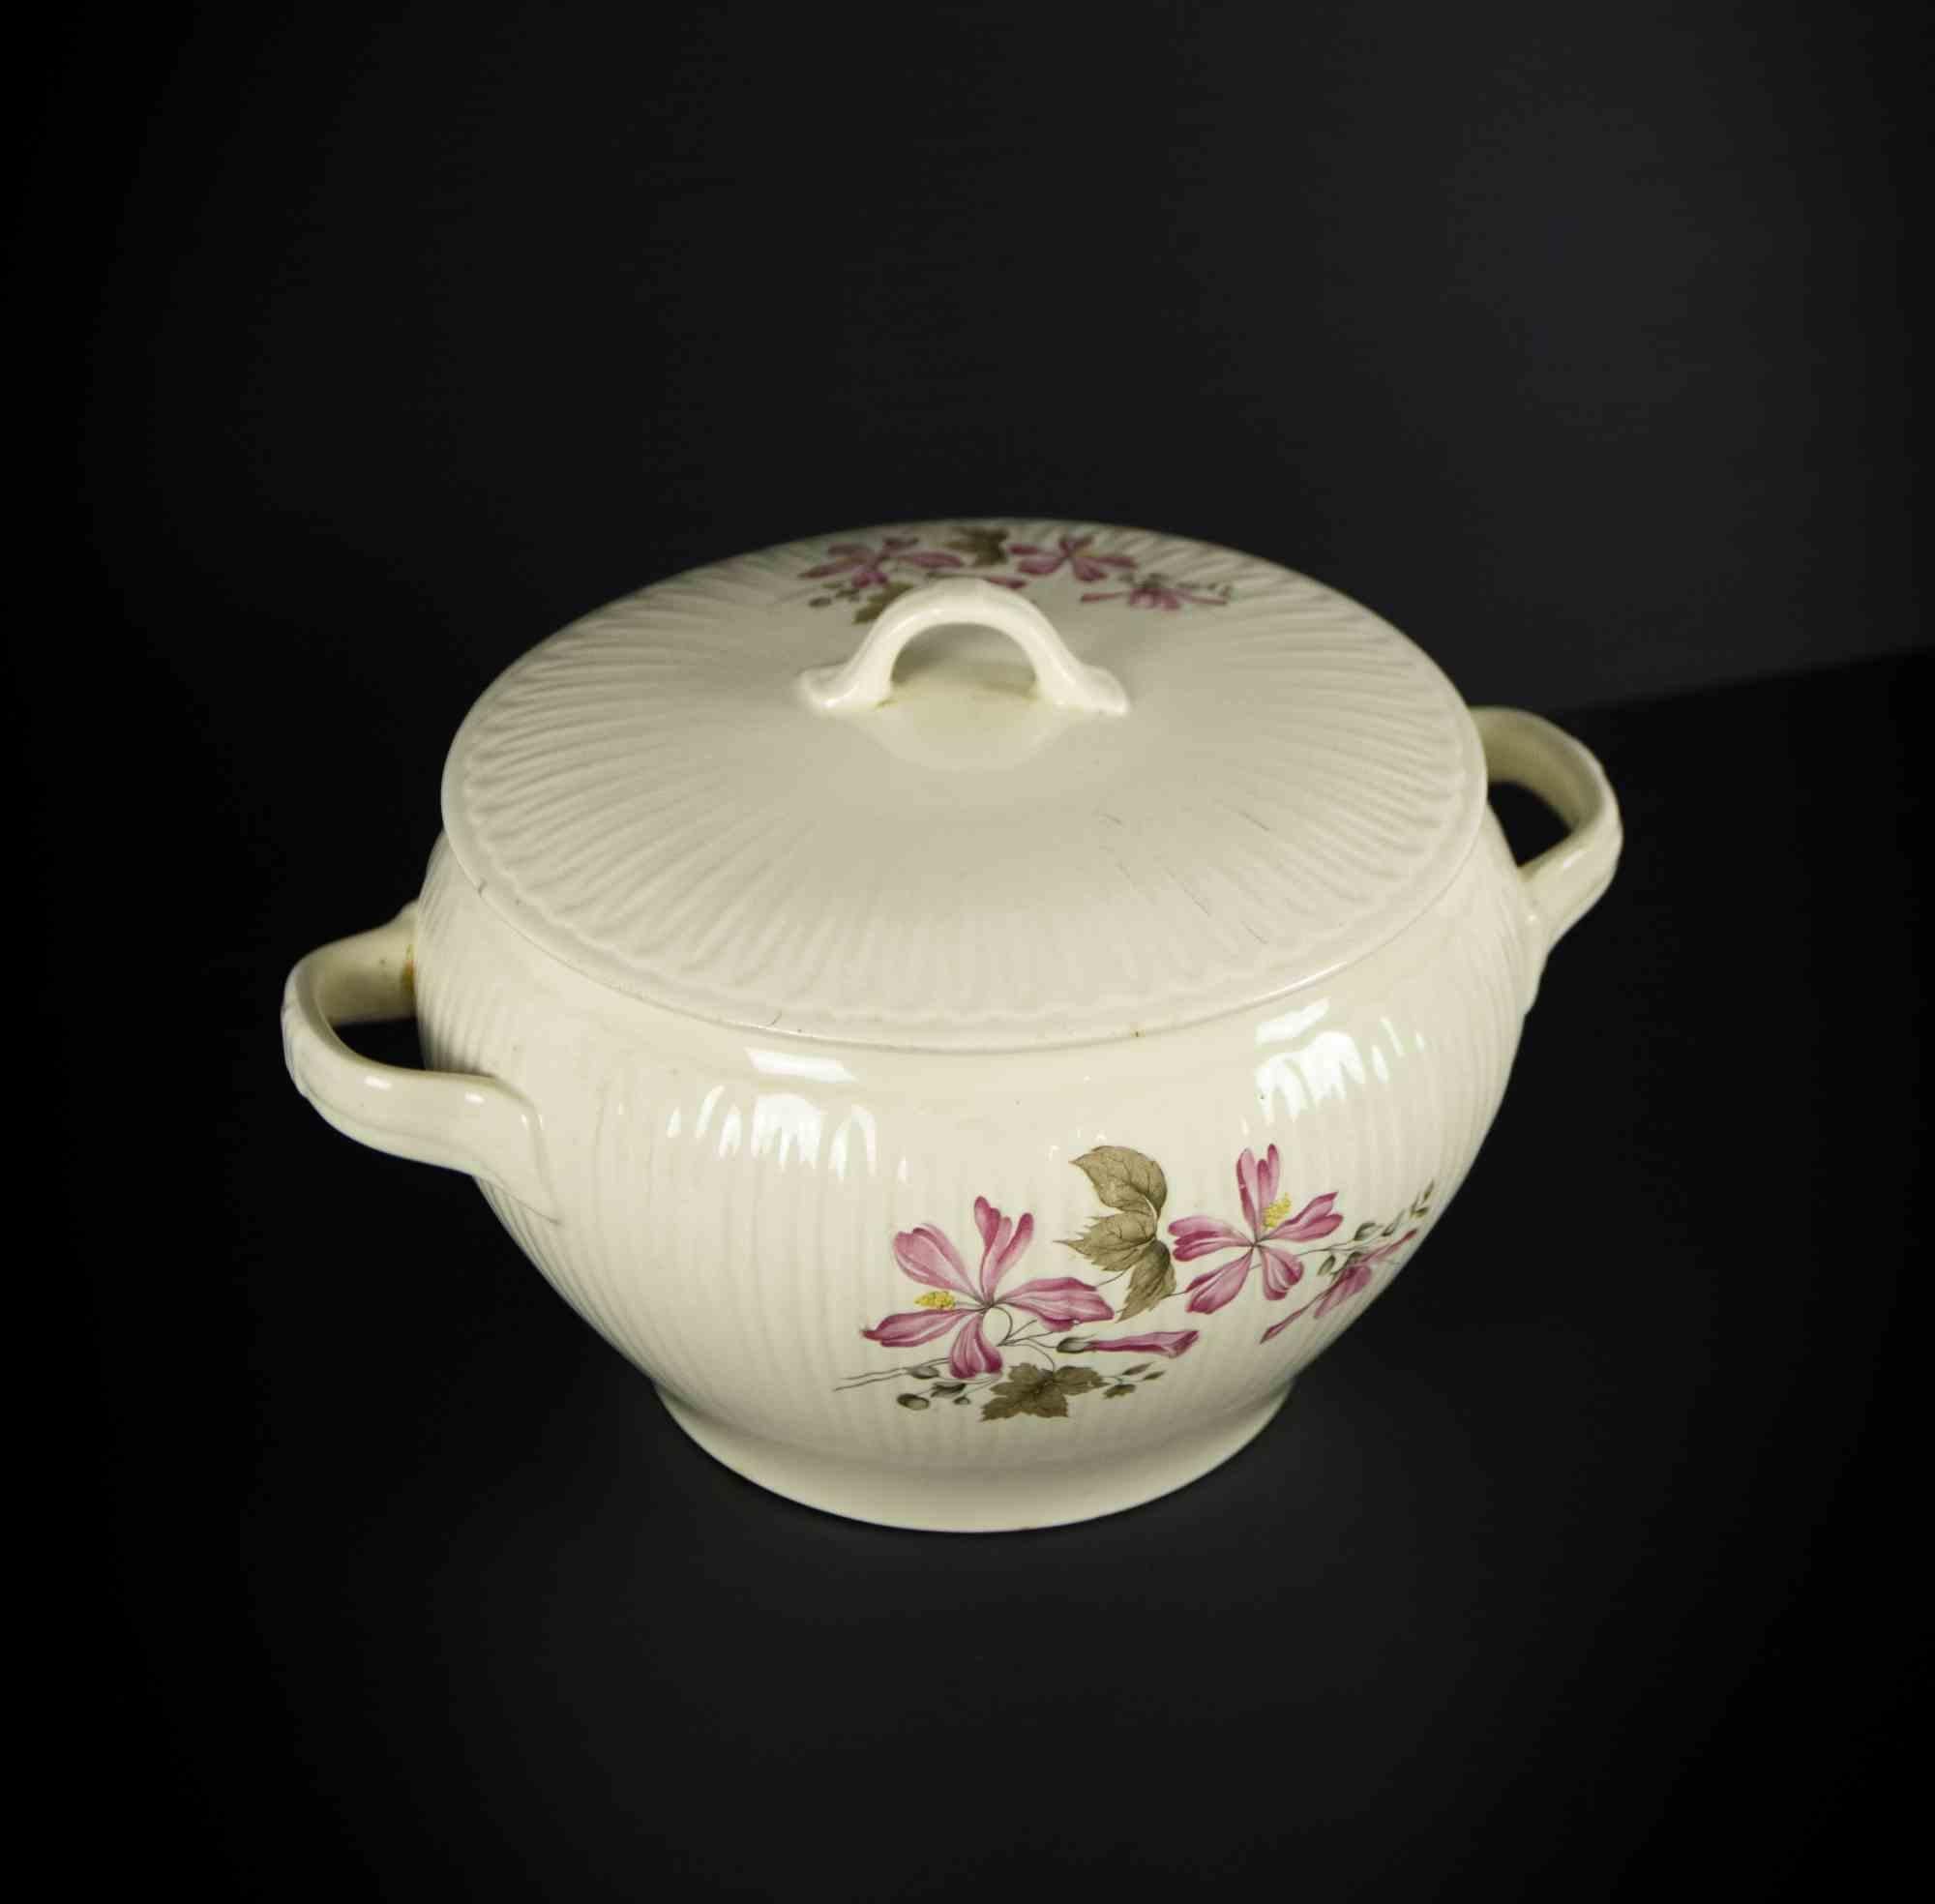 Die Vintage-Suppenschüssel ist ein originelles Dekorationsobjekt aus der Hälfte des 20. Jahrhunderts.

Eine sehr elegante Suppenschüssel aus Porzellan realisiert von Diamondstone Laveno - seit 1856 - Italien (wie unter dem Sockel